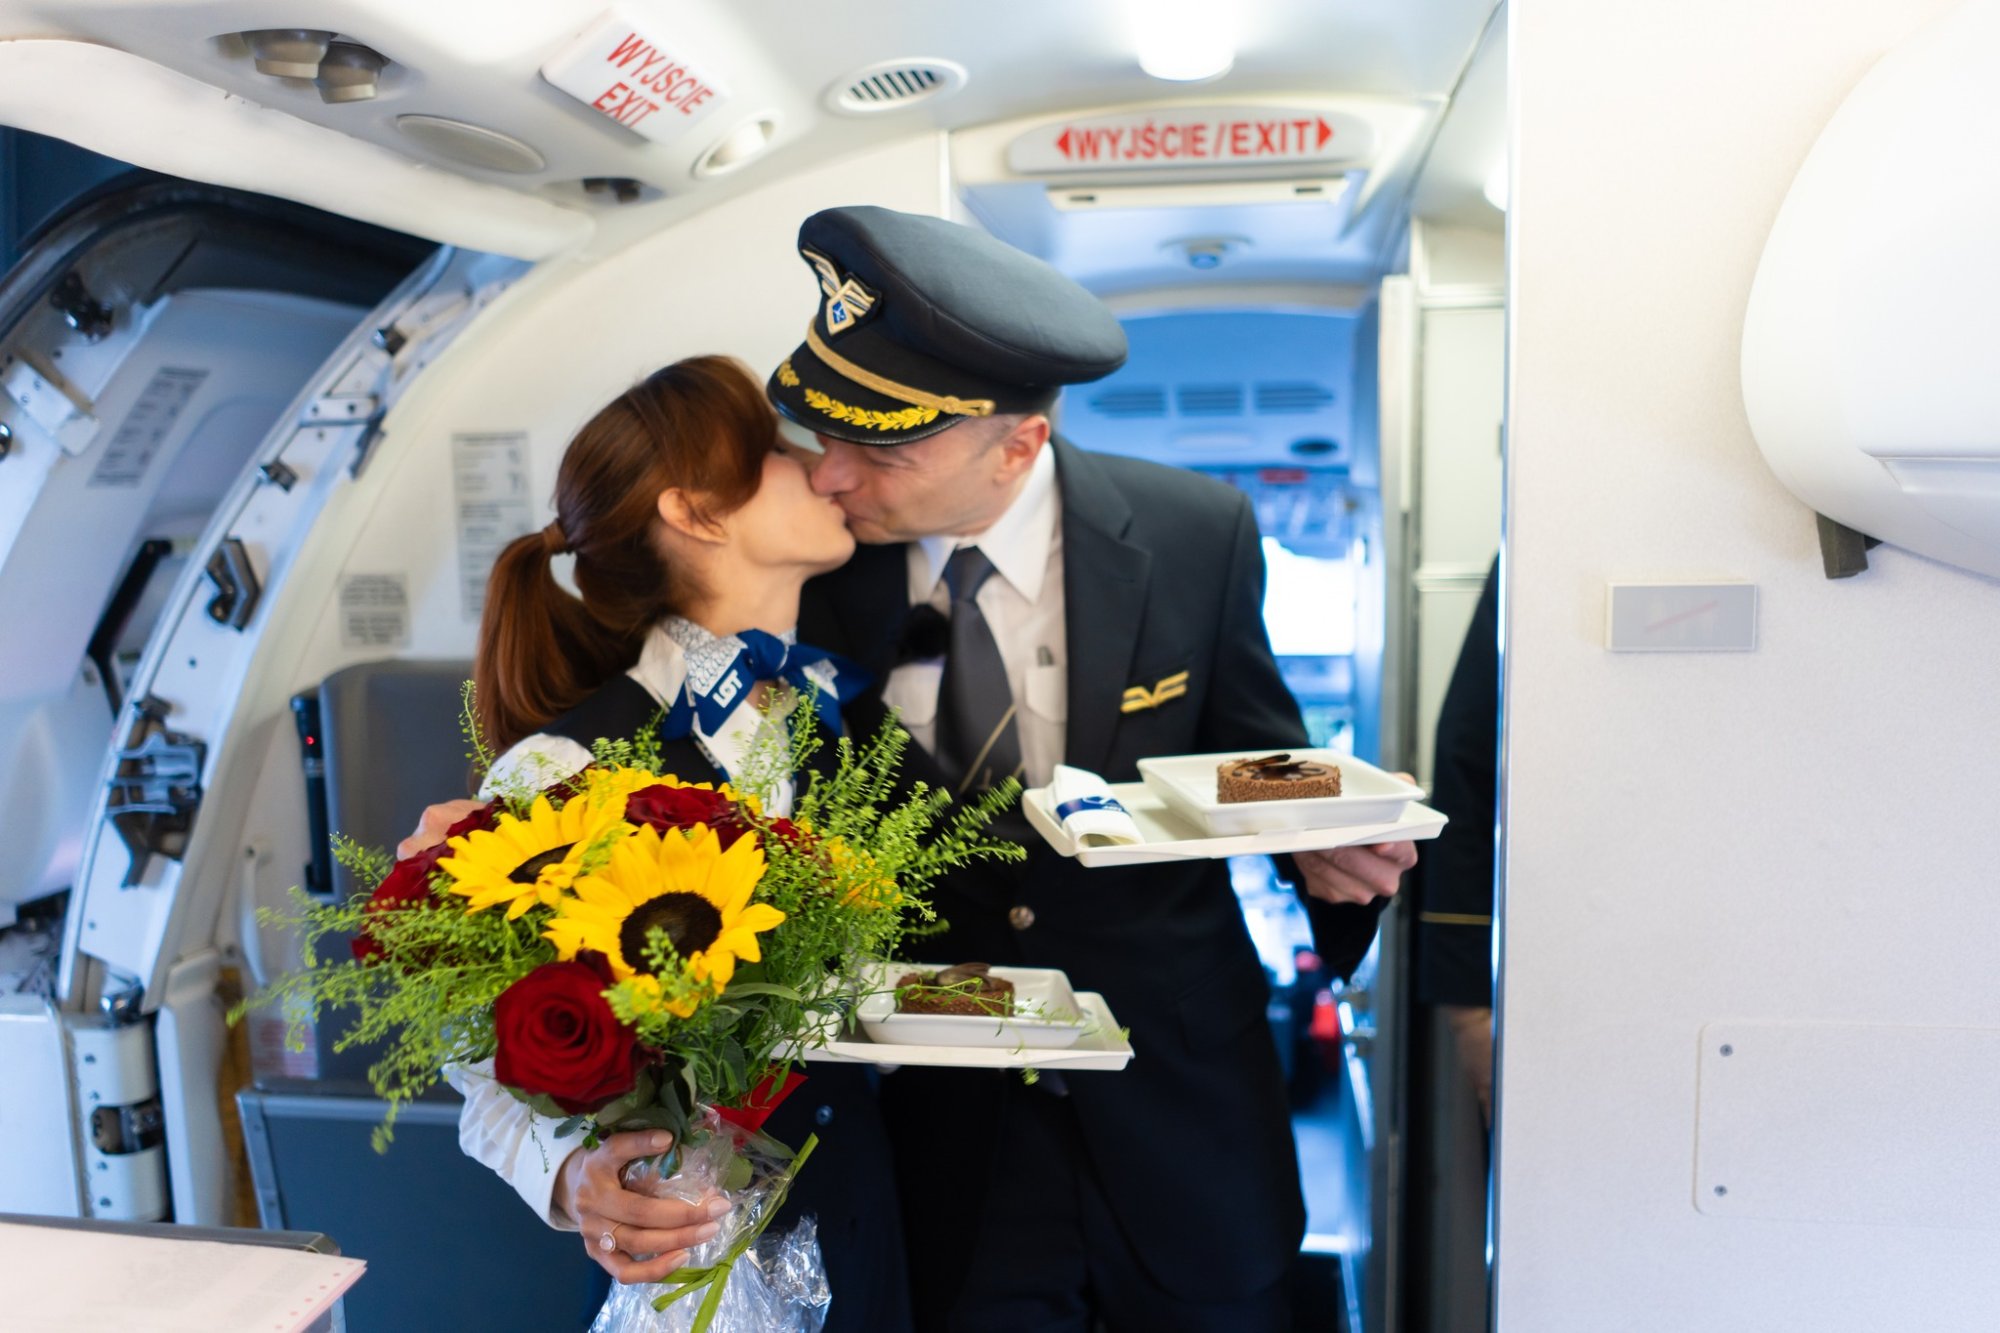 poolse piloot vraagt op vlucht zijn stewardess-vriendin ten huwelijk